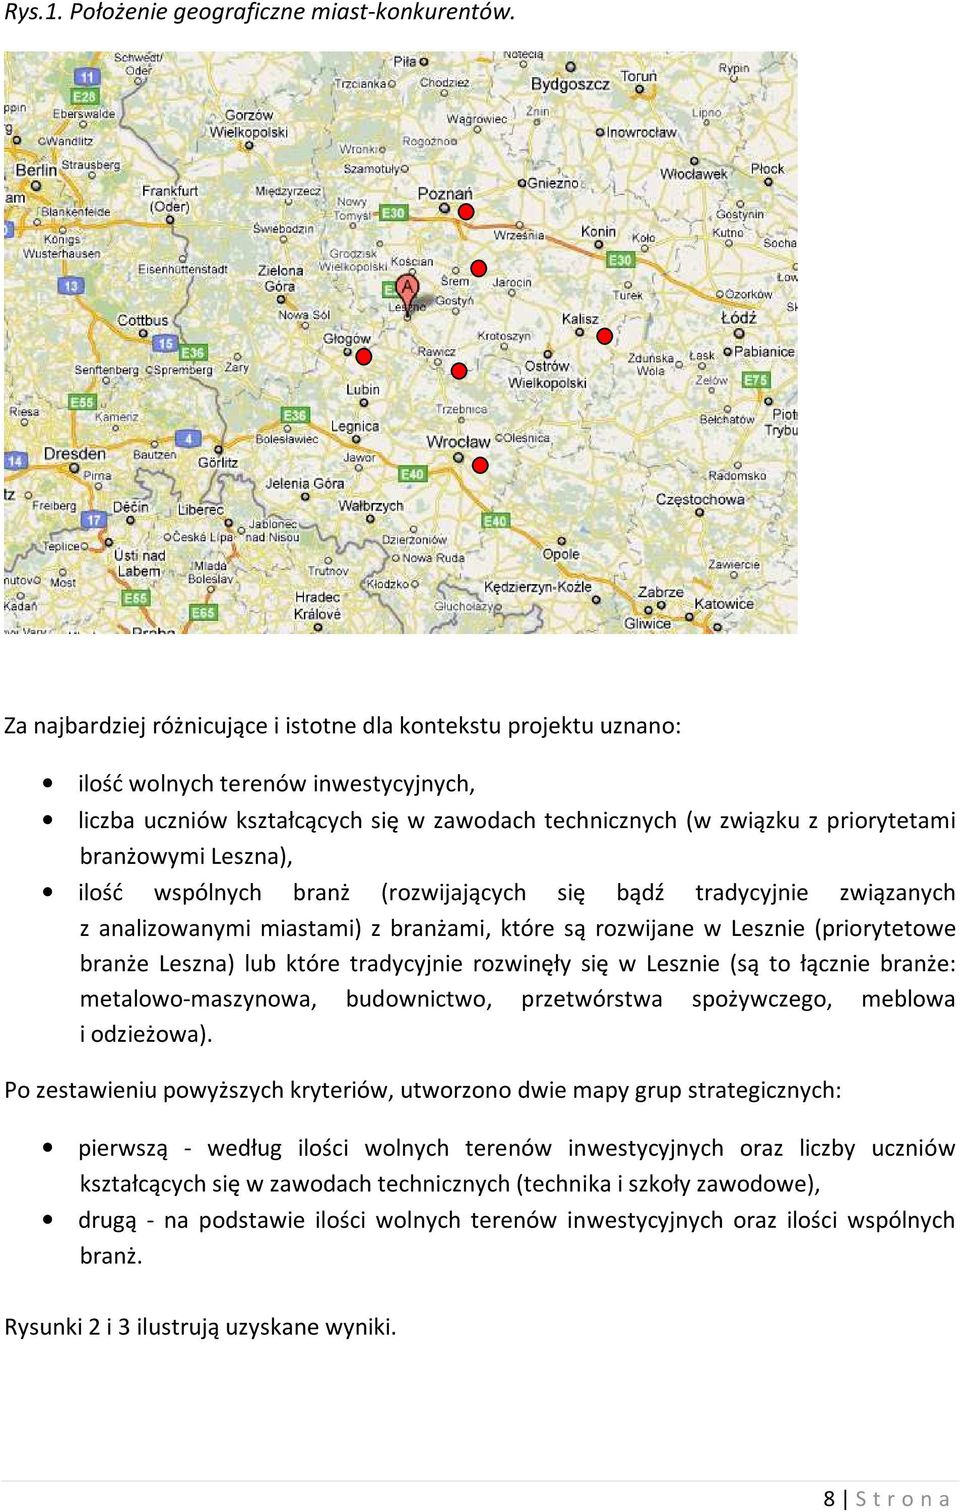 Leszna), ilość wspólnych branż (rozwijających się bądź tradycyjnie związanych z analizowanymi miastami) z branżami, które są rozwijane w Lesznie (priorytetowe branże Leszna) lub które tradycyjnie